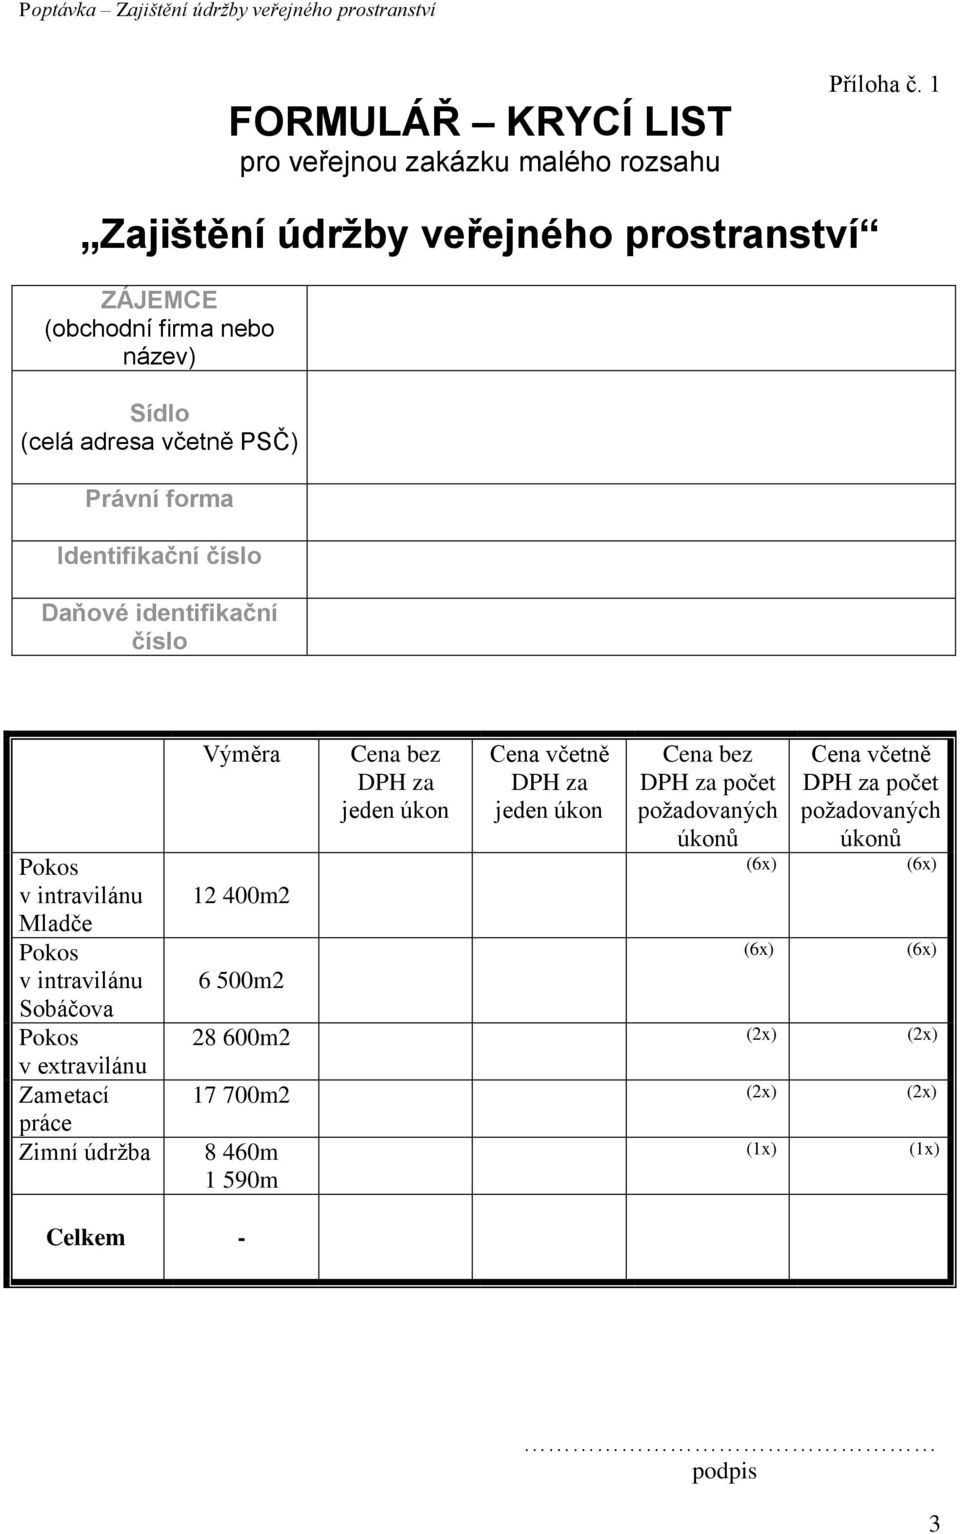 Daňové identifikační číslo v intravilánu Mladče v intravilánu Sobáčova v extravilánu Zametací práce Zimní údržba Výměra 12 400m2 6 500m2 Cena